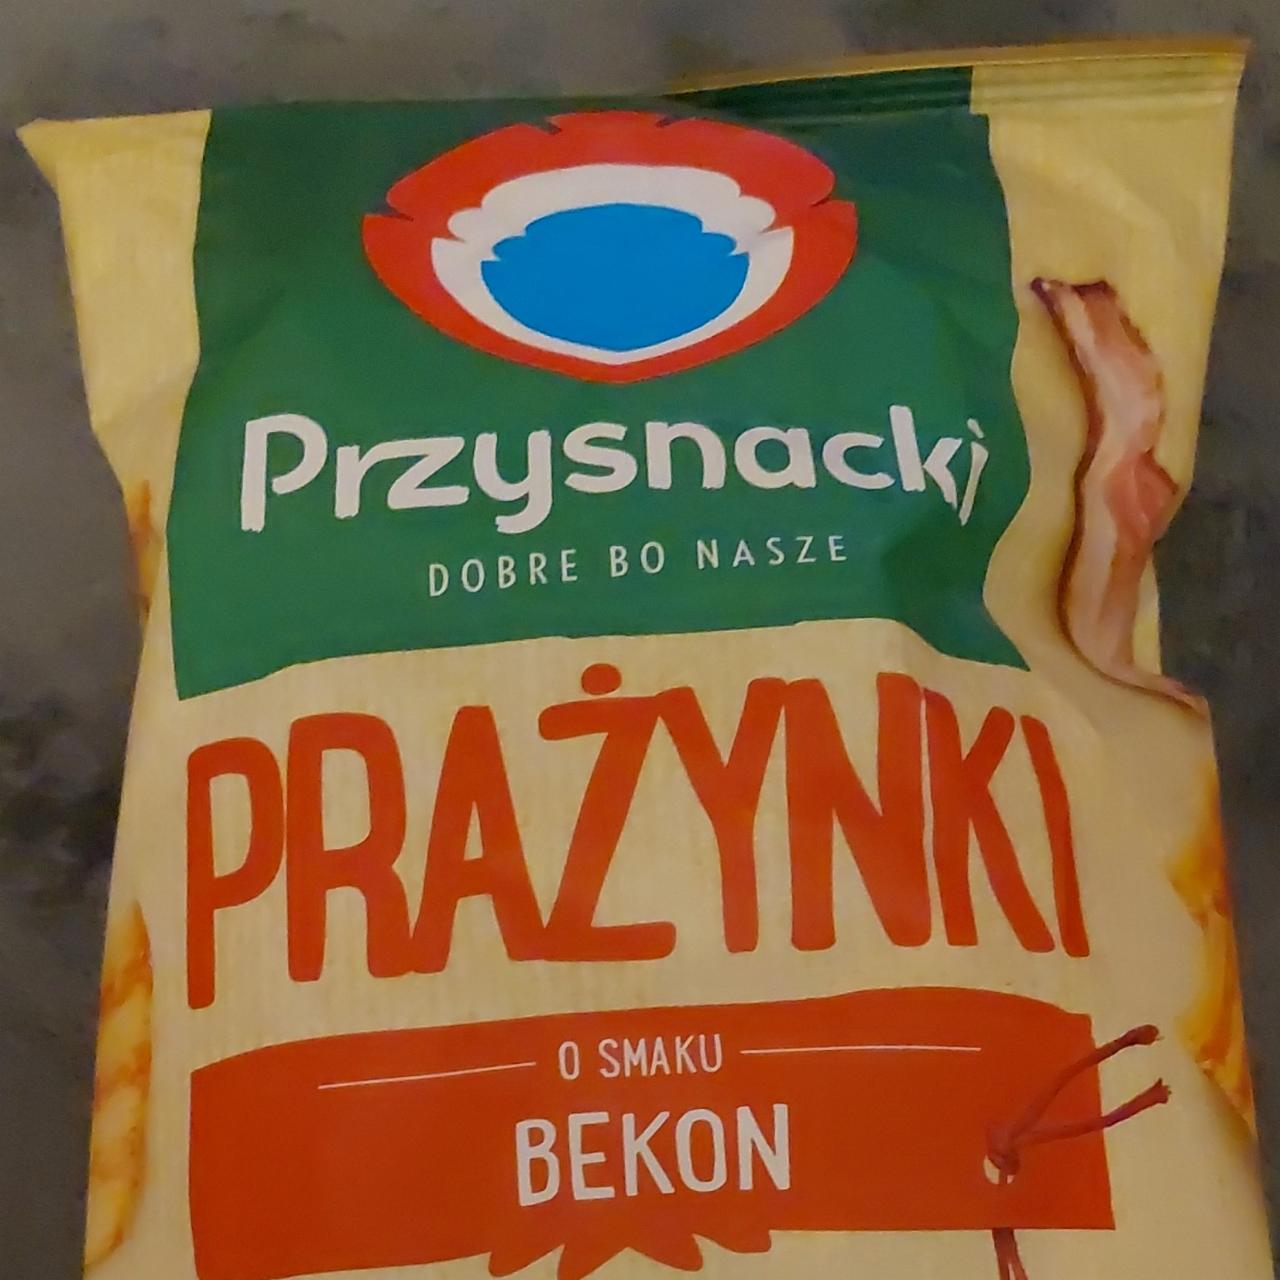 Фото - Снеки картопляно-пшеничні зі смаком бекона Przysnacki